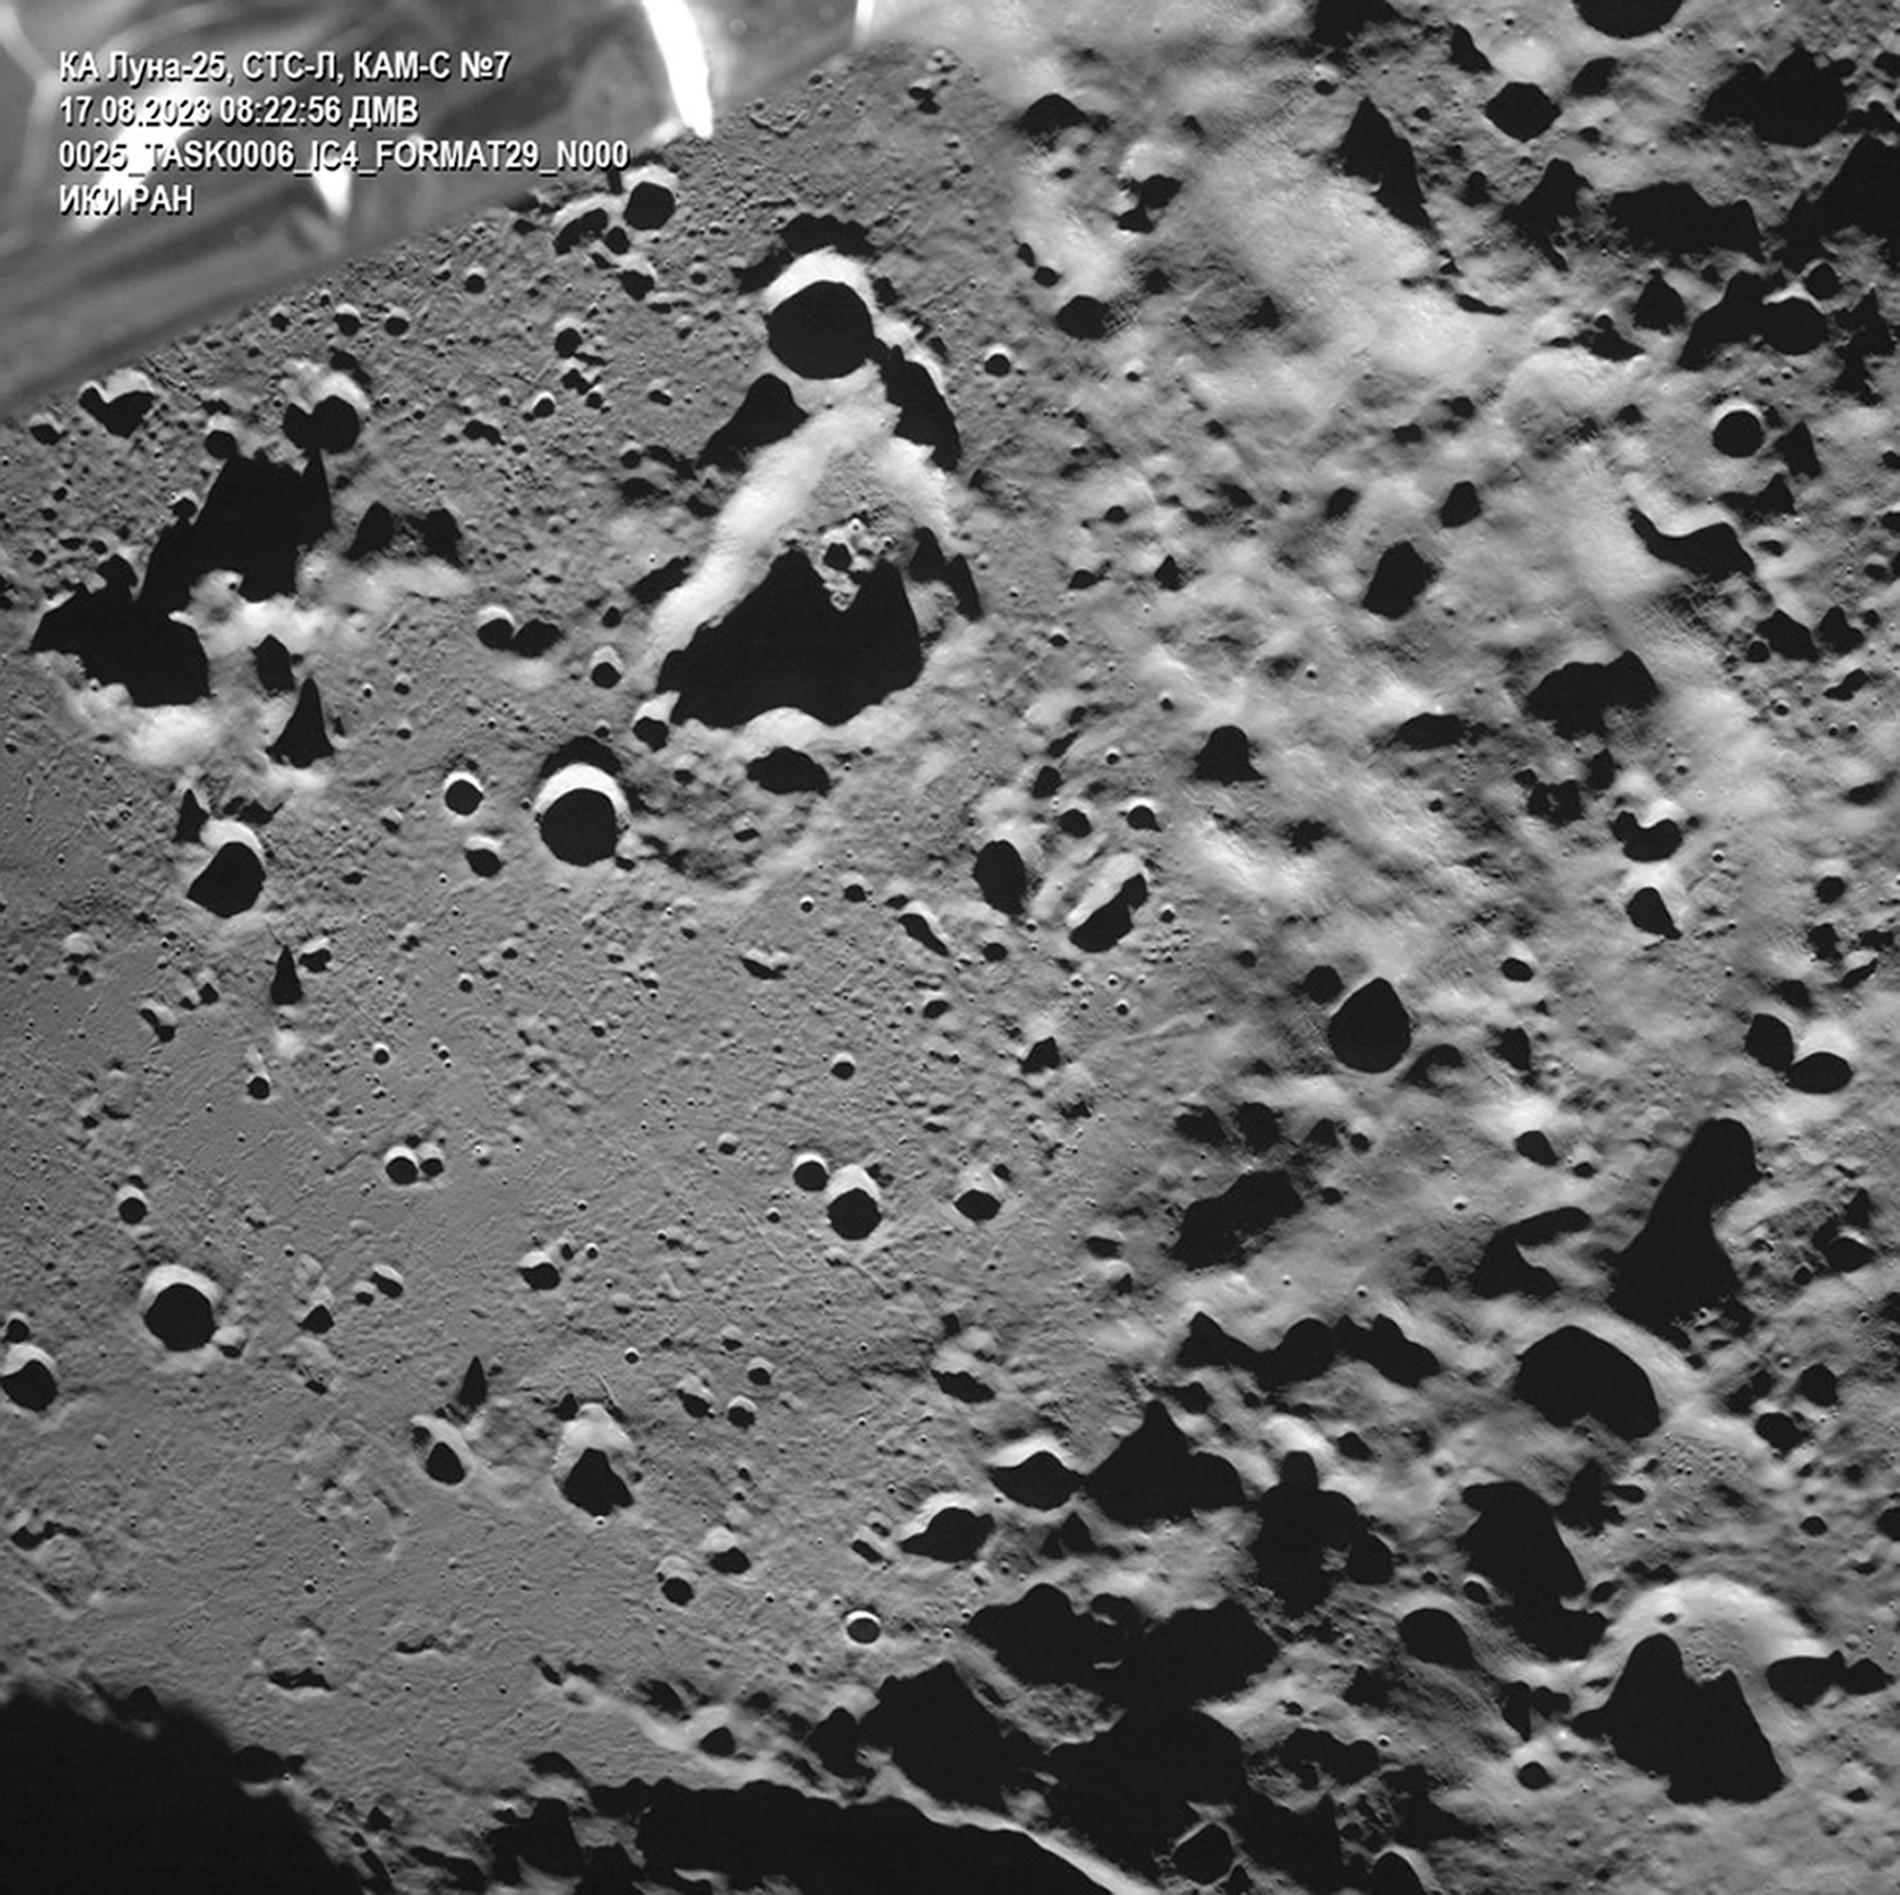 Luna 25 tog bilder av månen innan den kraschade.